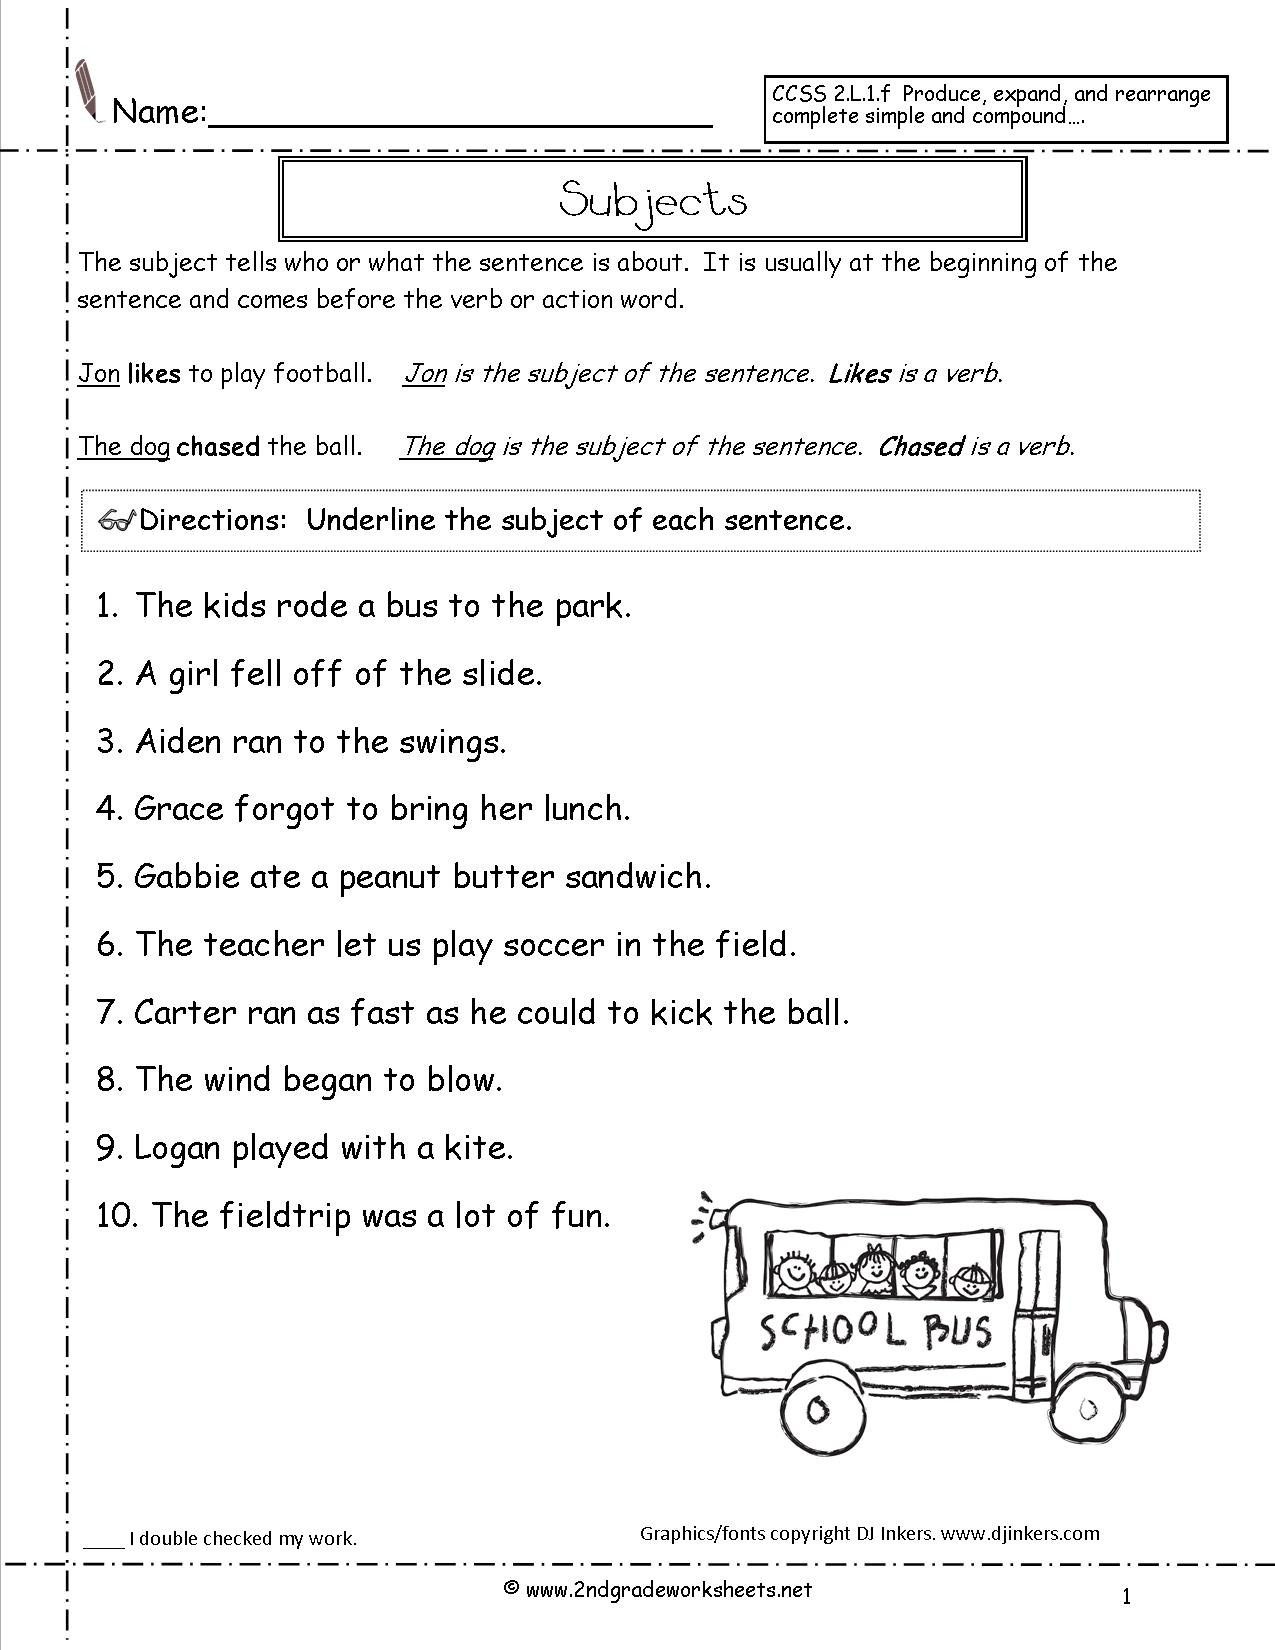 Complete Sentences Worksheets 1st Grade Second Grade Sentences Worksheets Ccss 2 L 1 F Worksheets